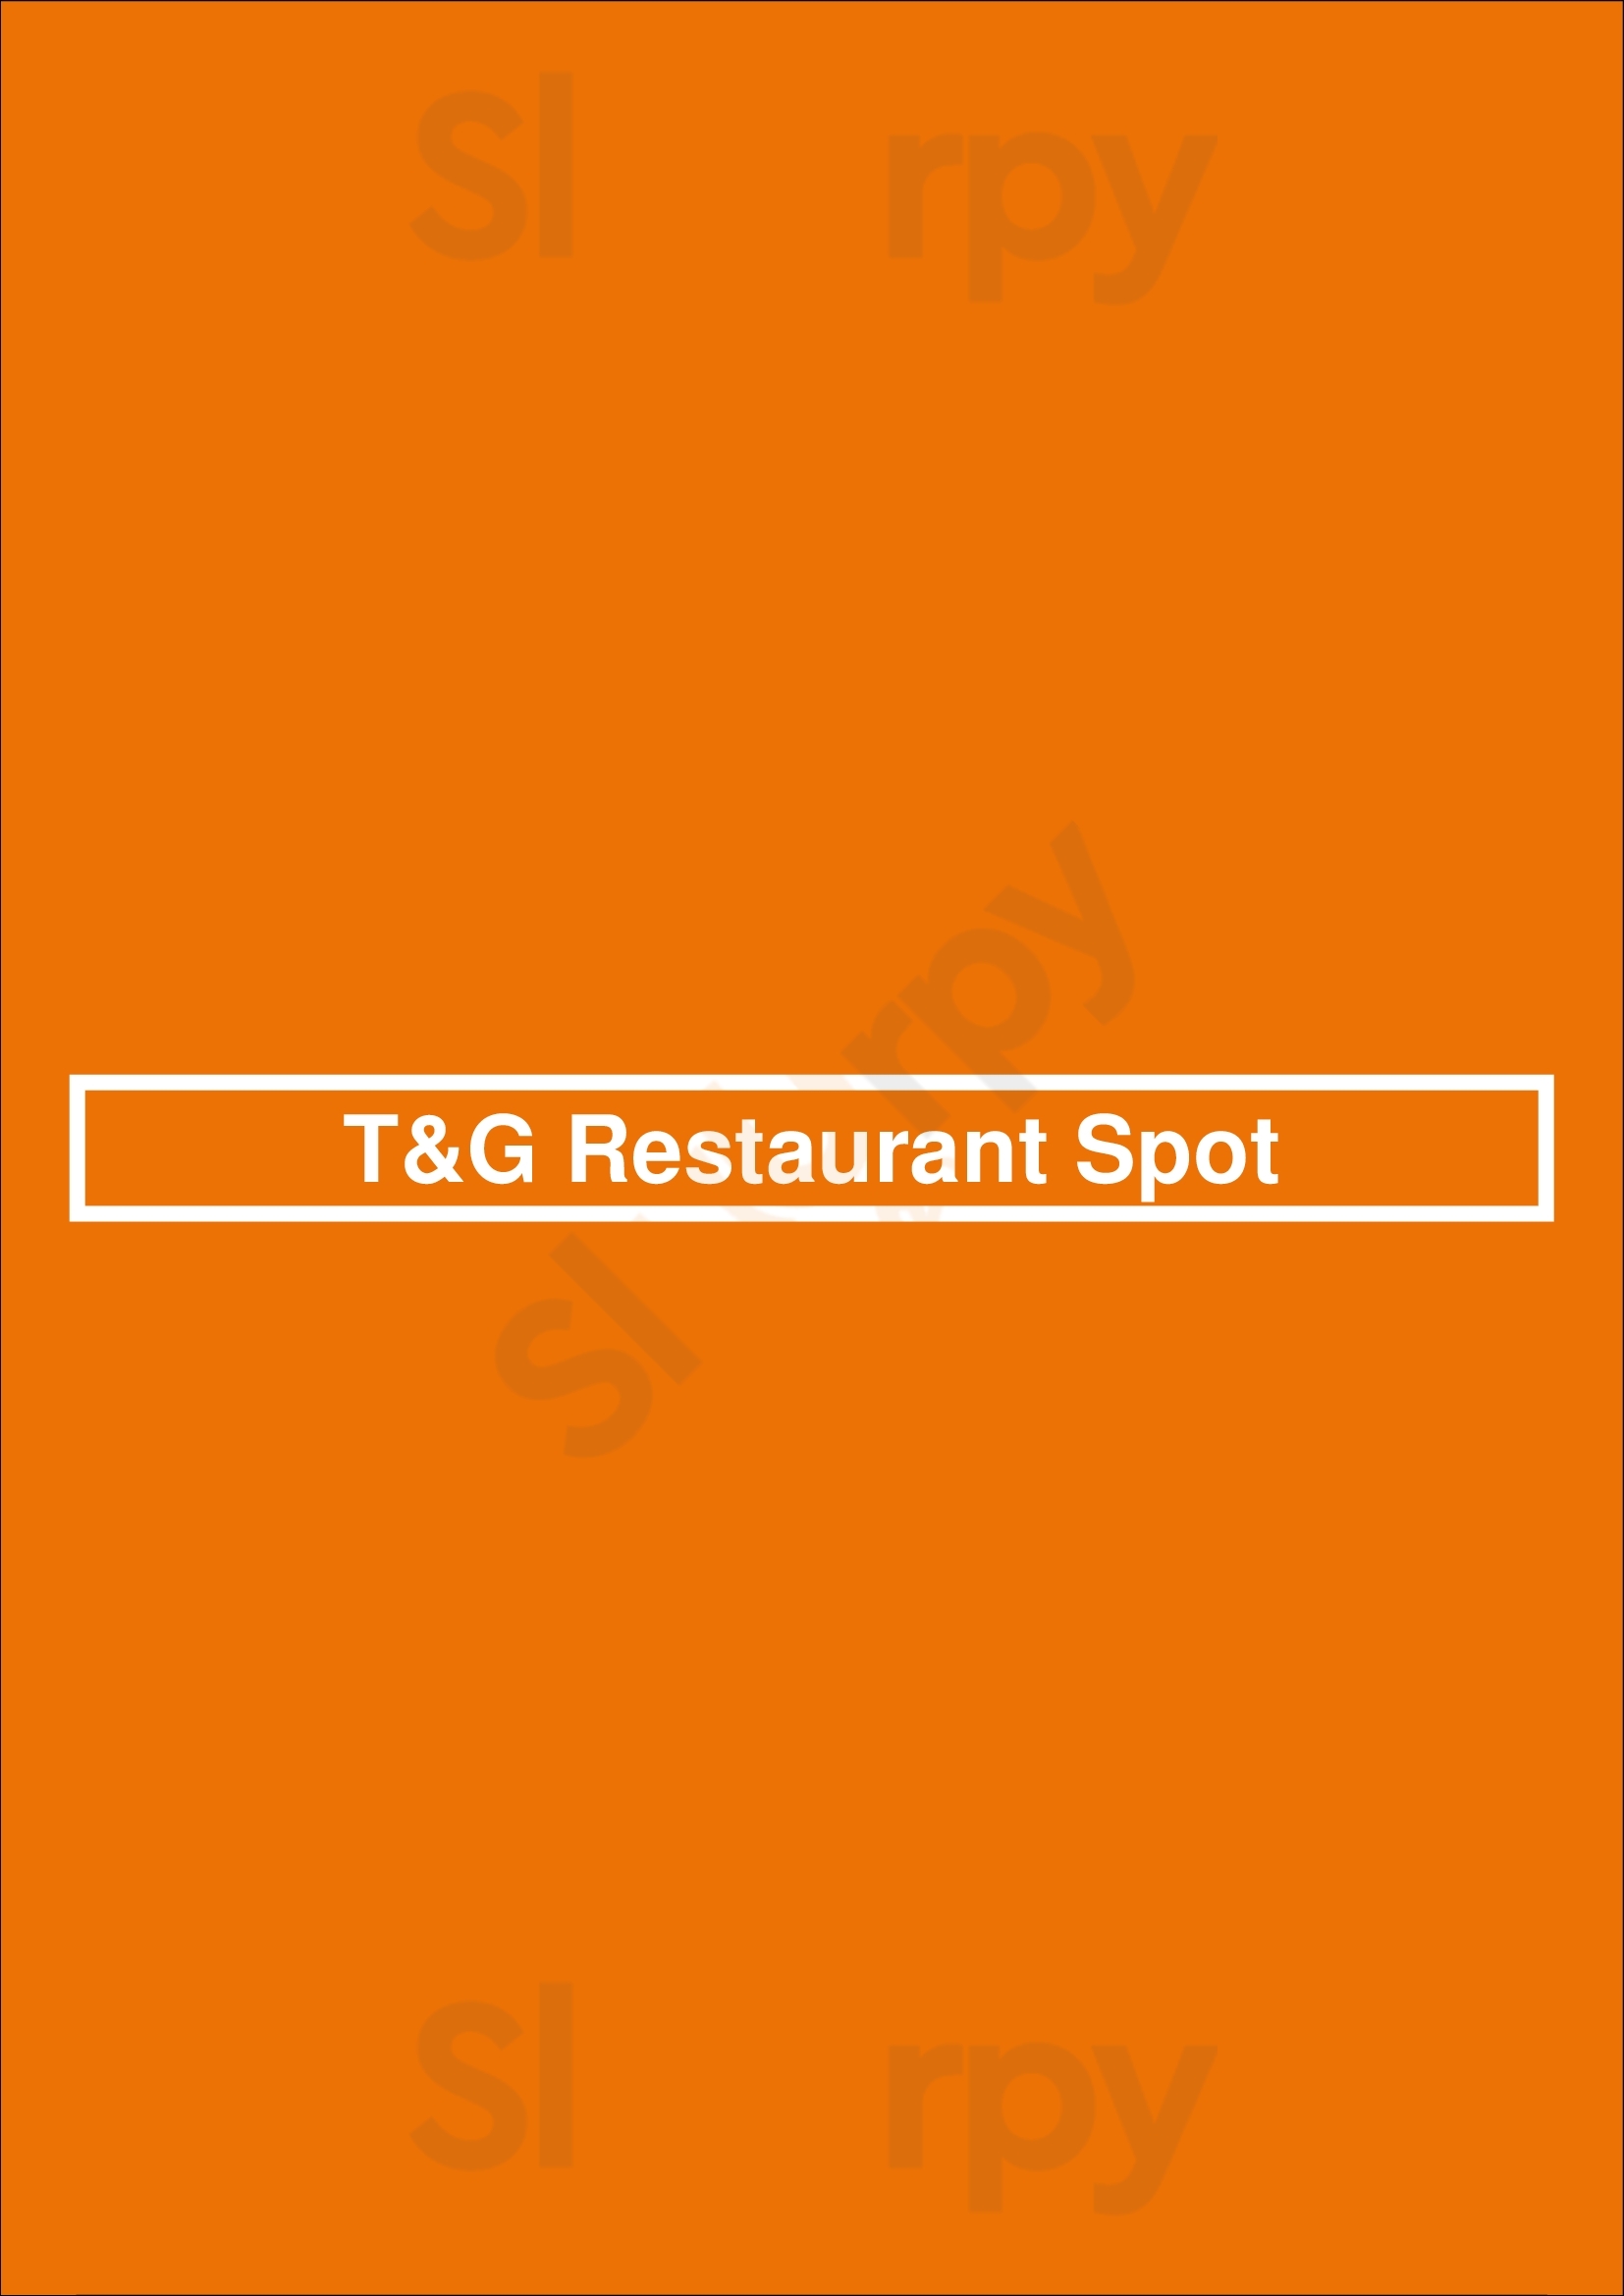 T&g Restaurant Spot Brooklyn Menu - 1